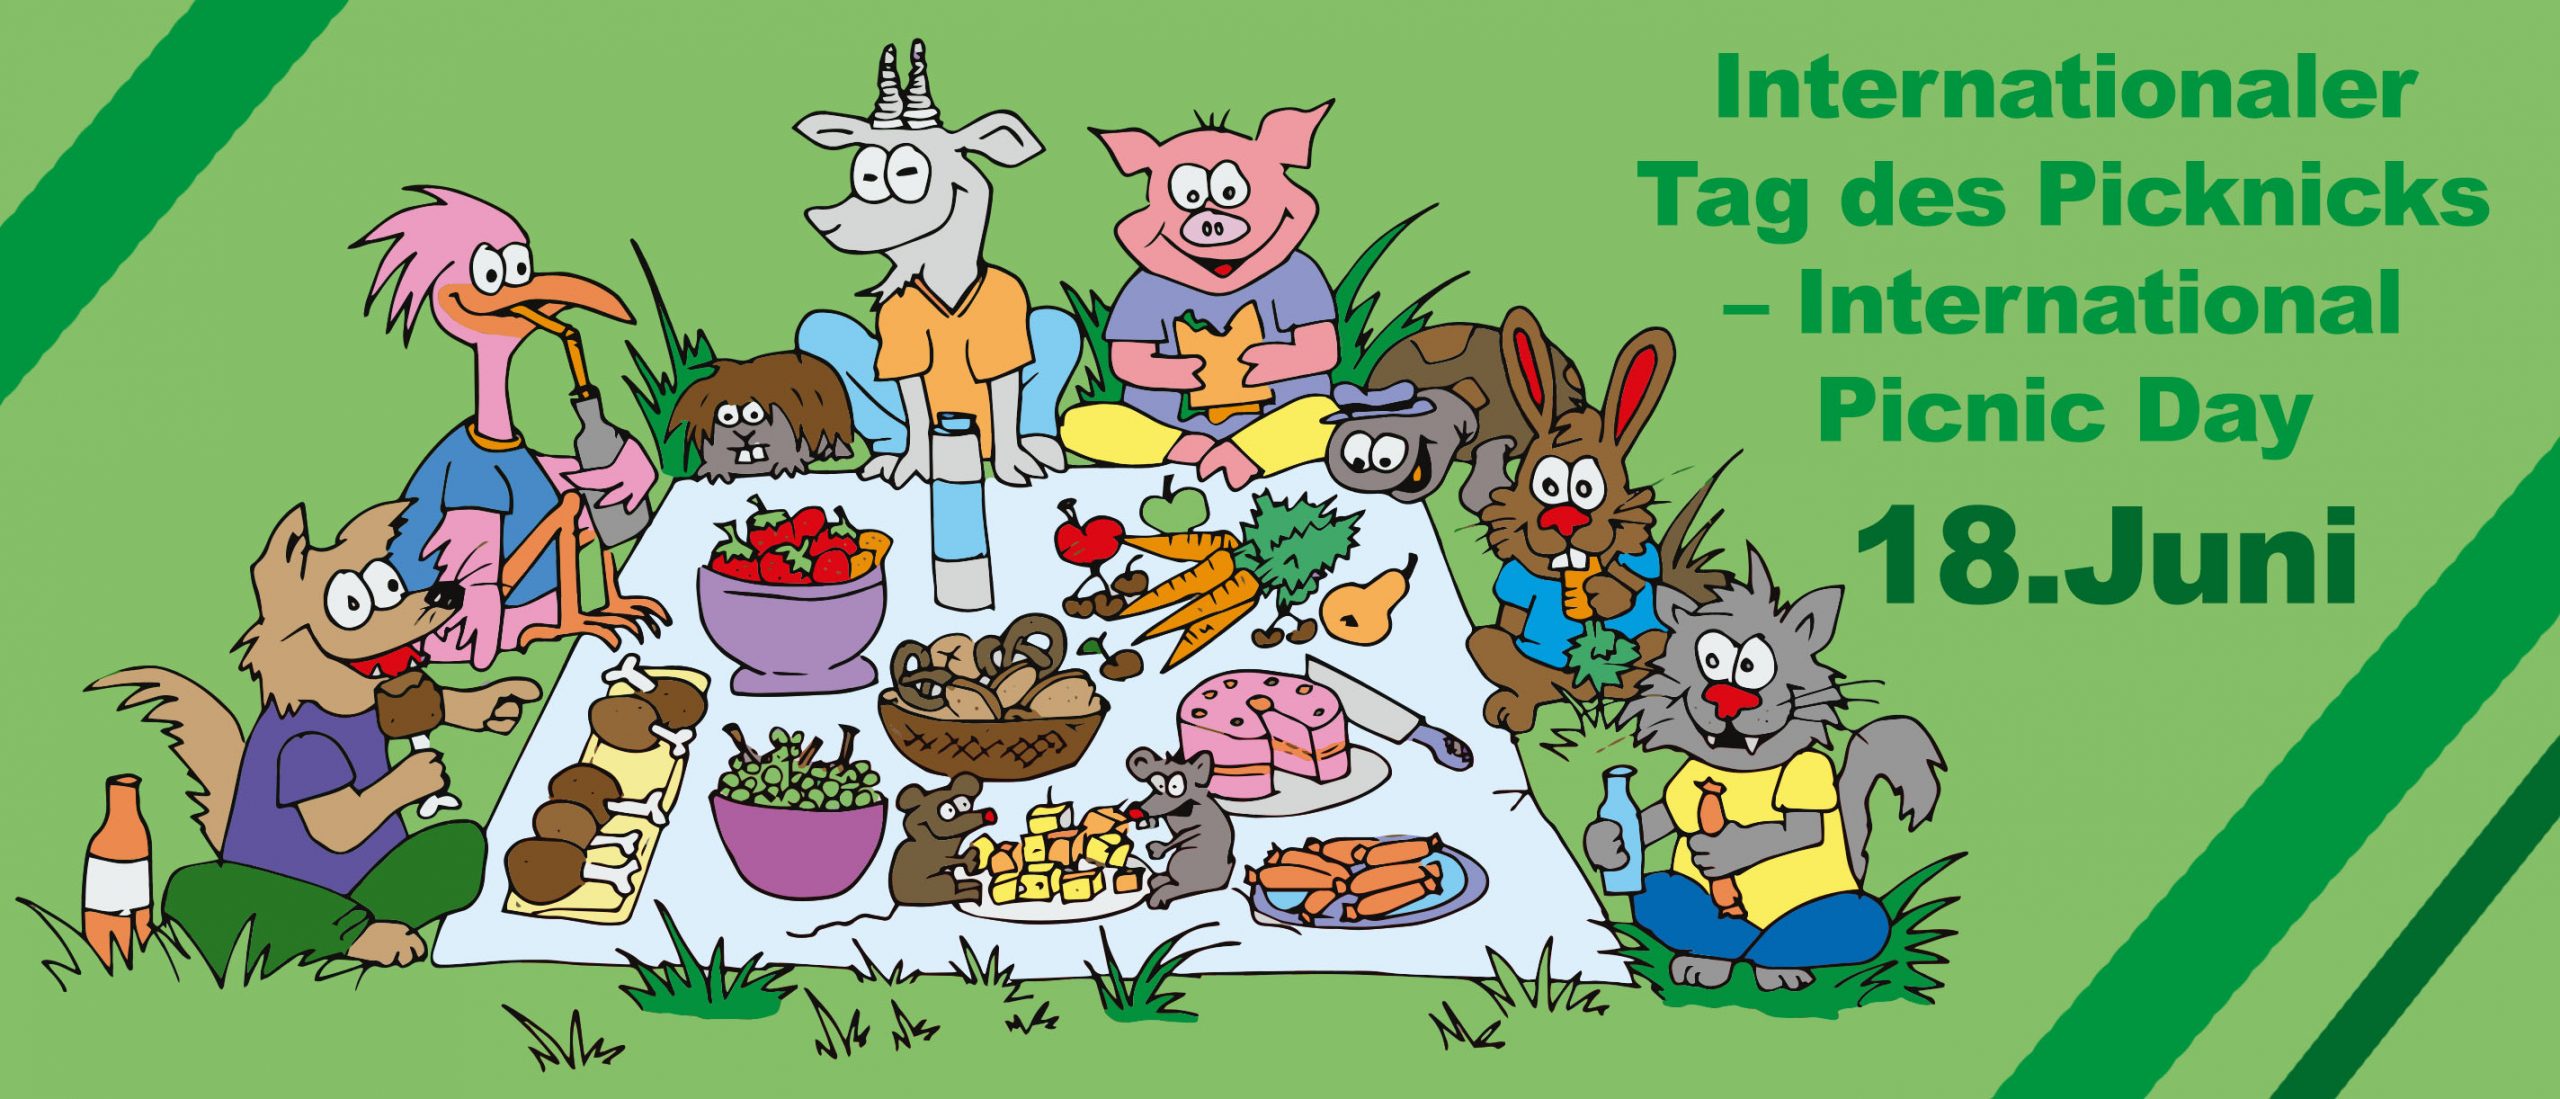 “Internationaler Tag des Picknicks – International Picnic Day” – 20% Rabatt!